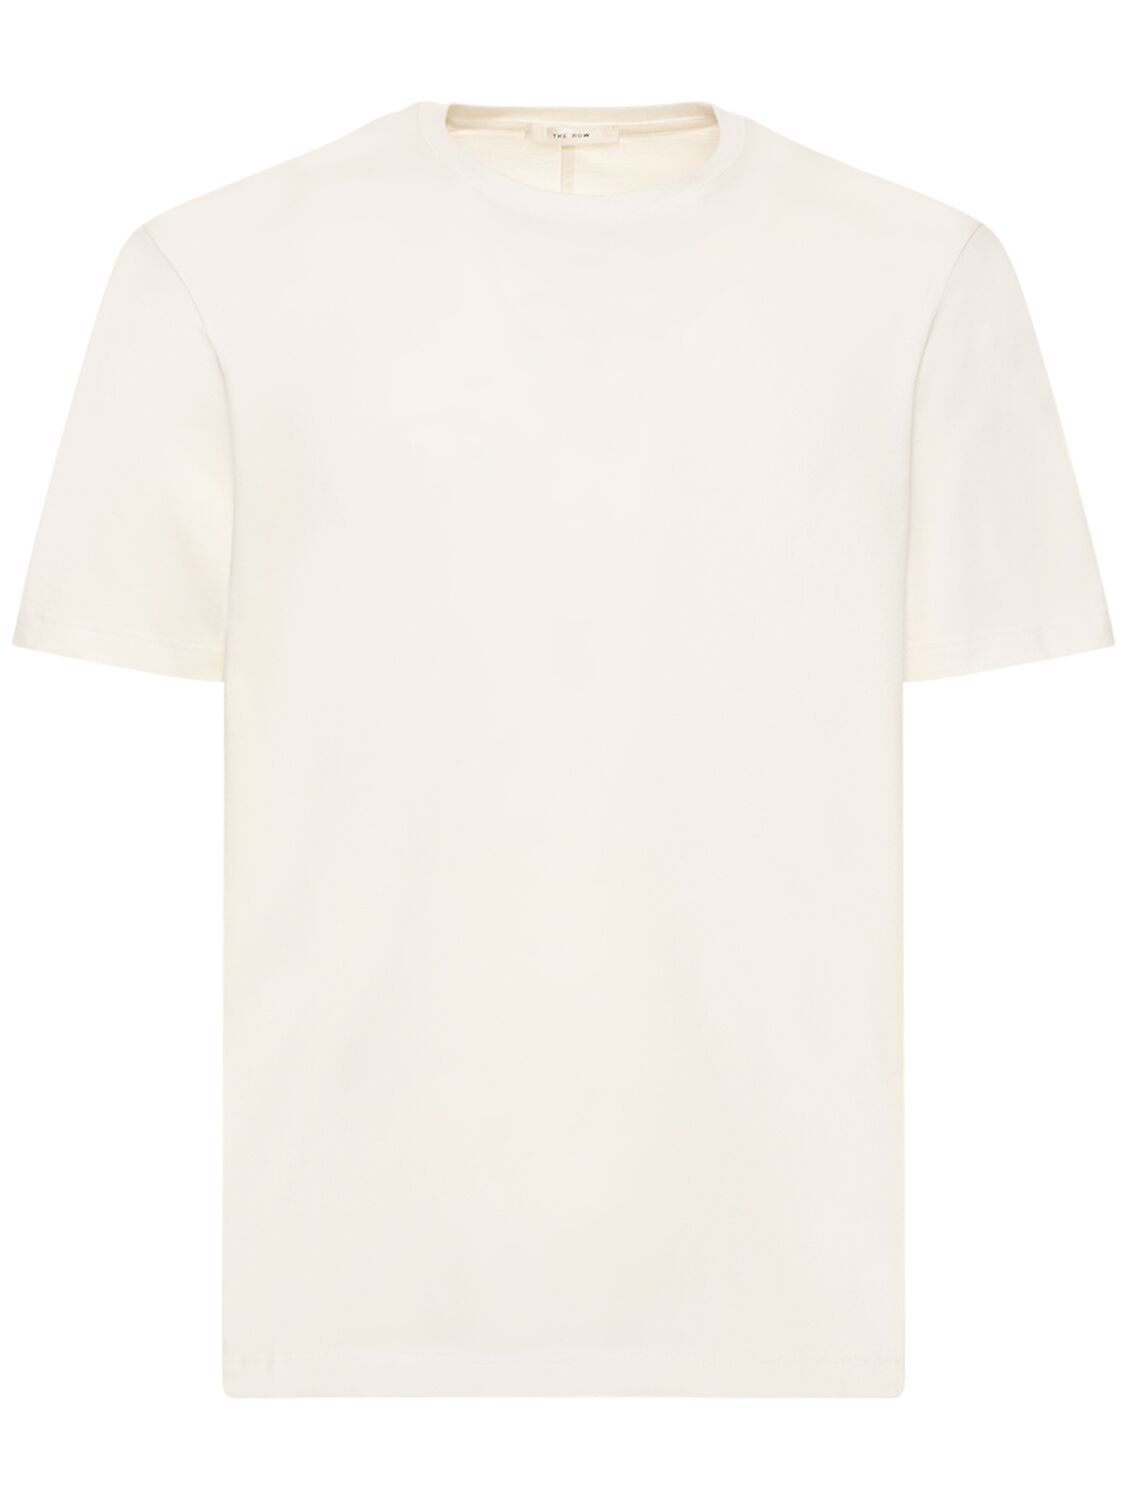 Image of Luke Cotton T-shirt